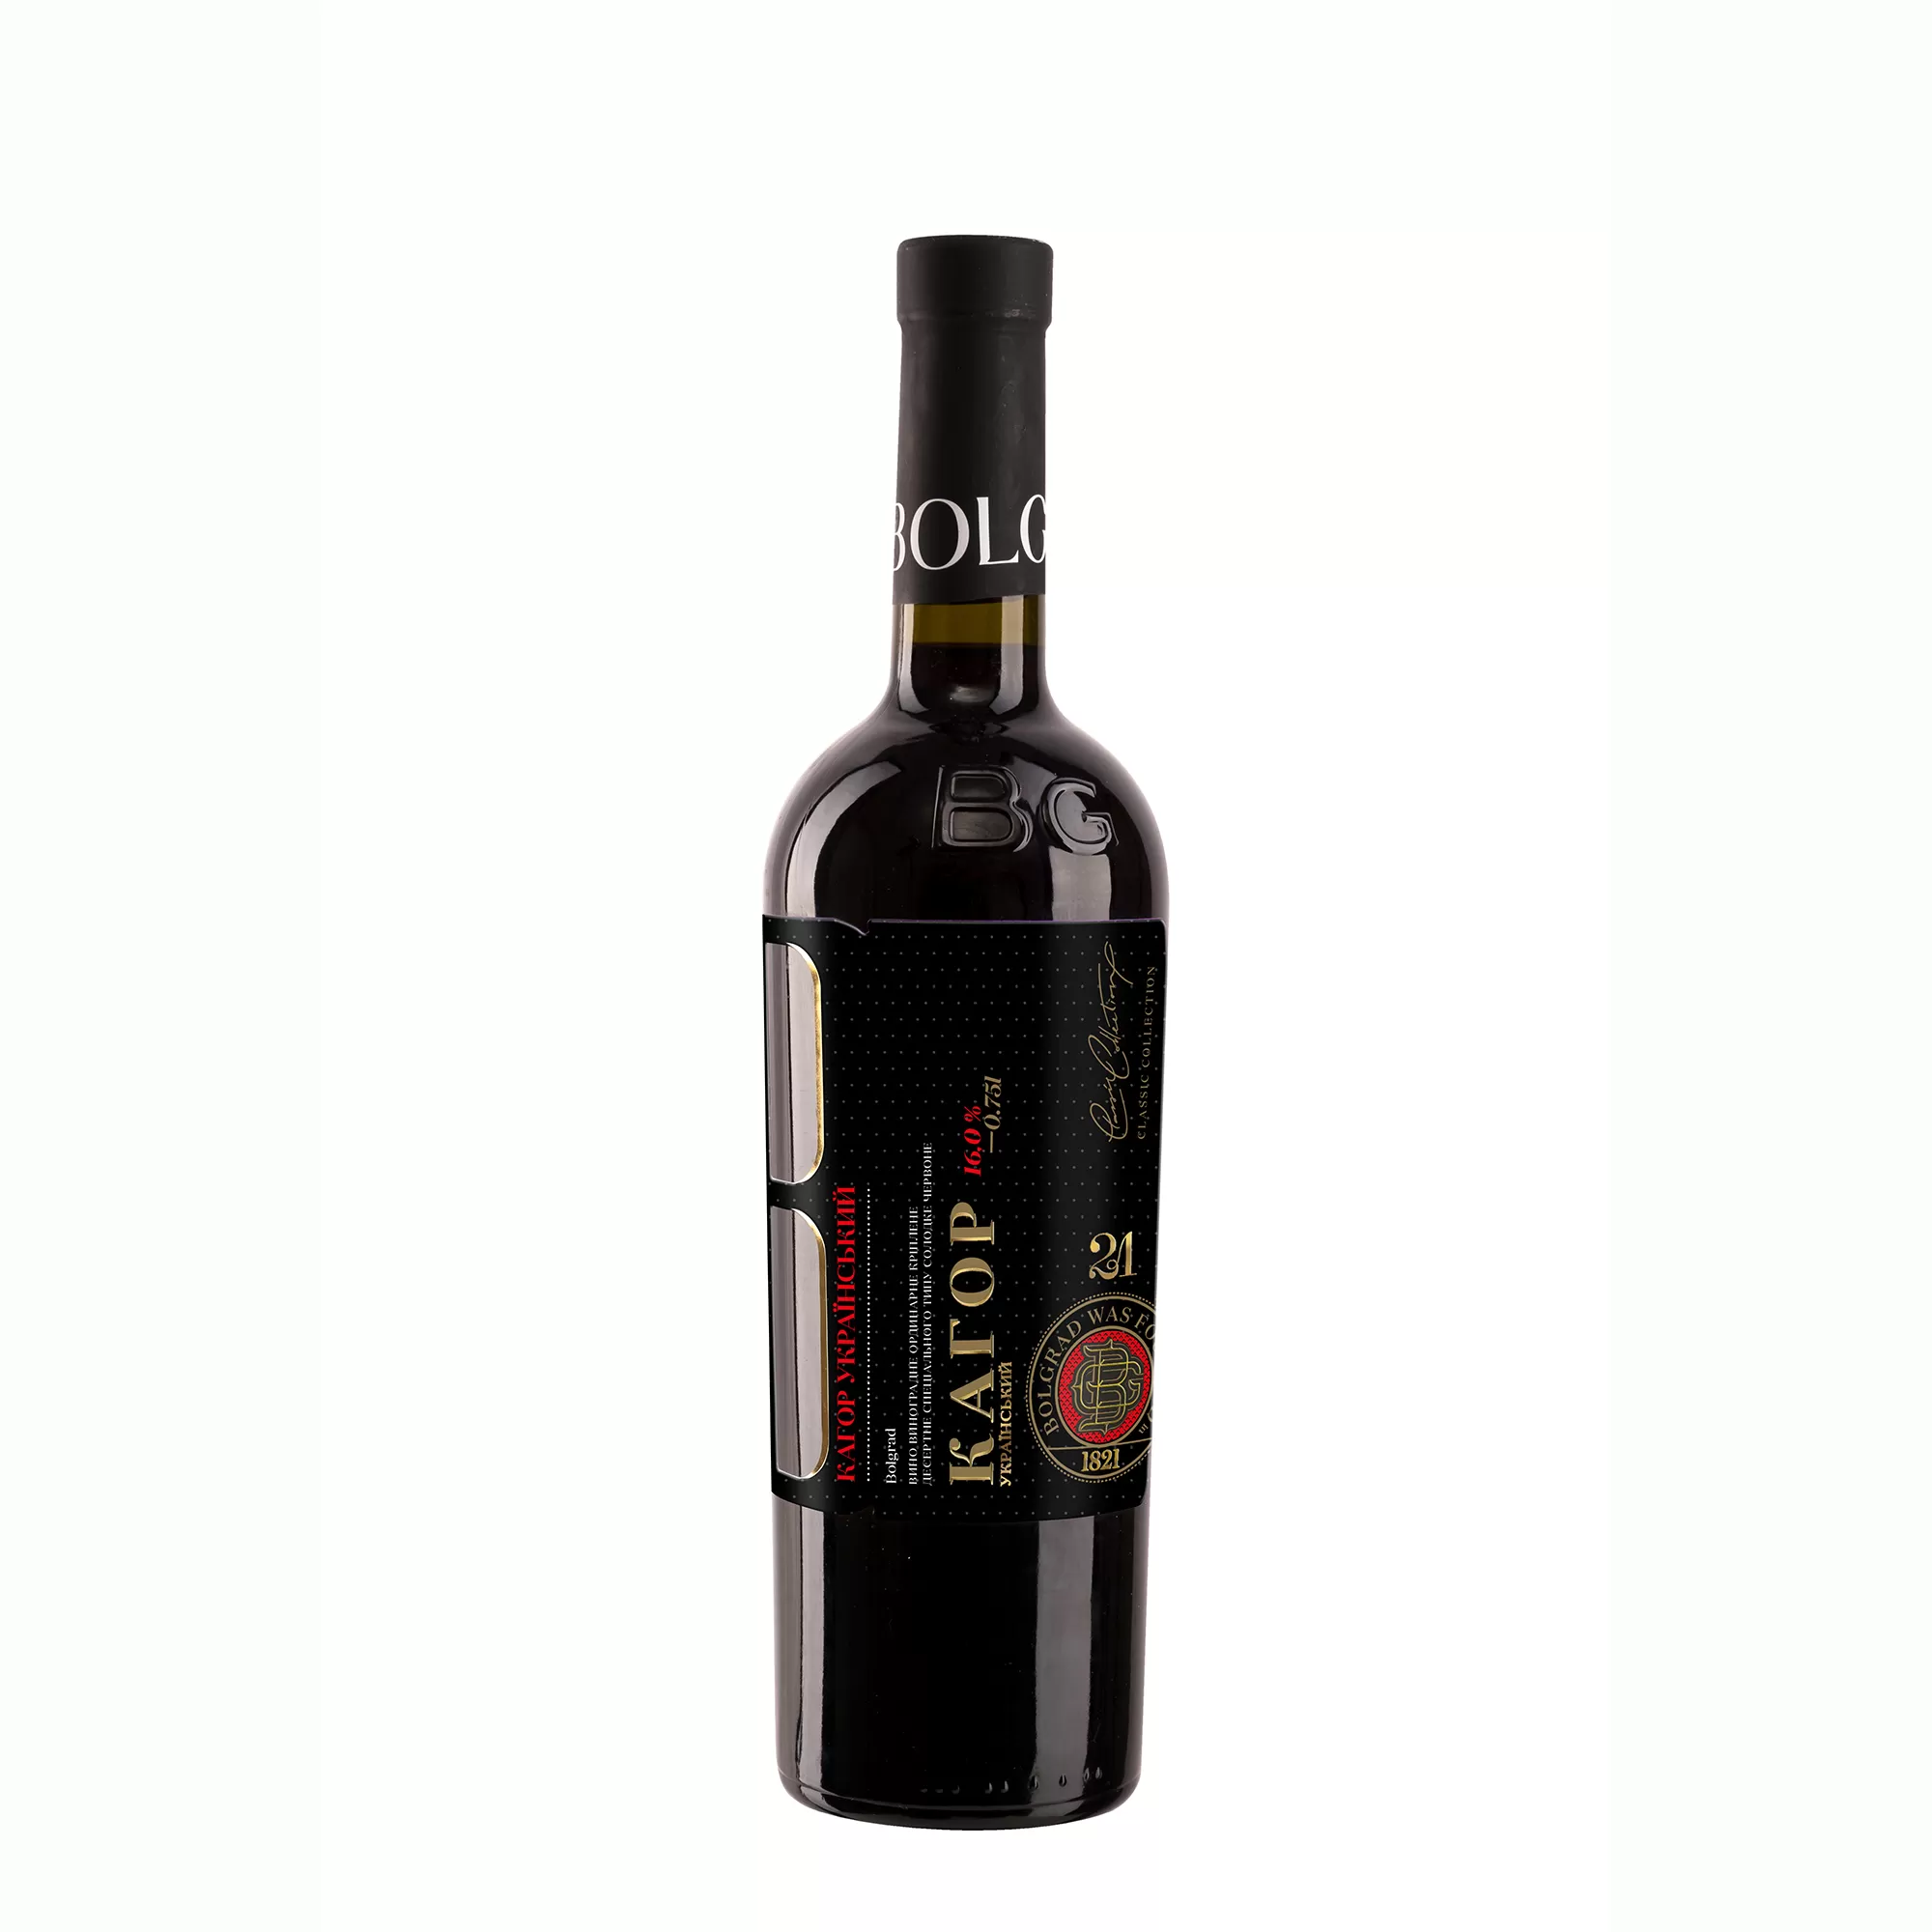 Вино Bolgrad Кагор Украинский красное десертное 0,75л 16% (1544)